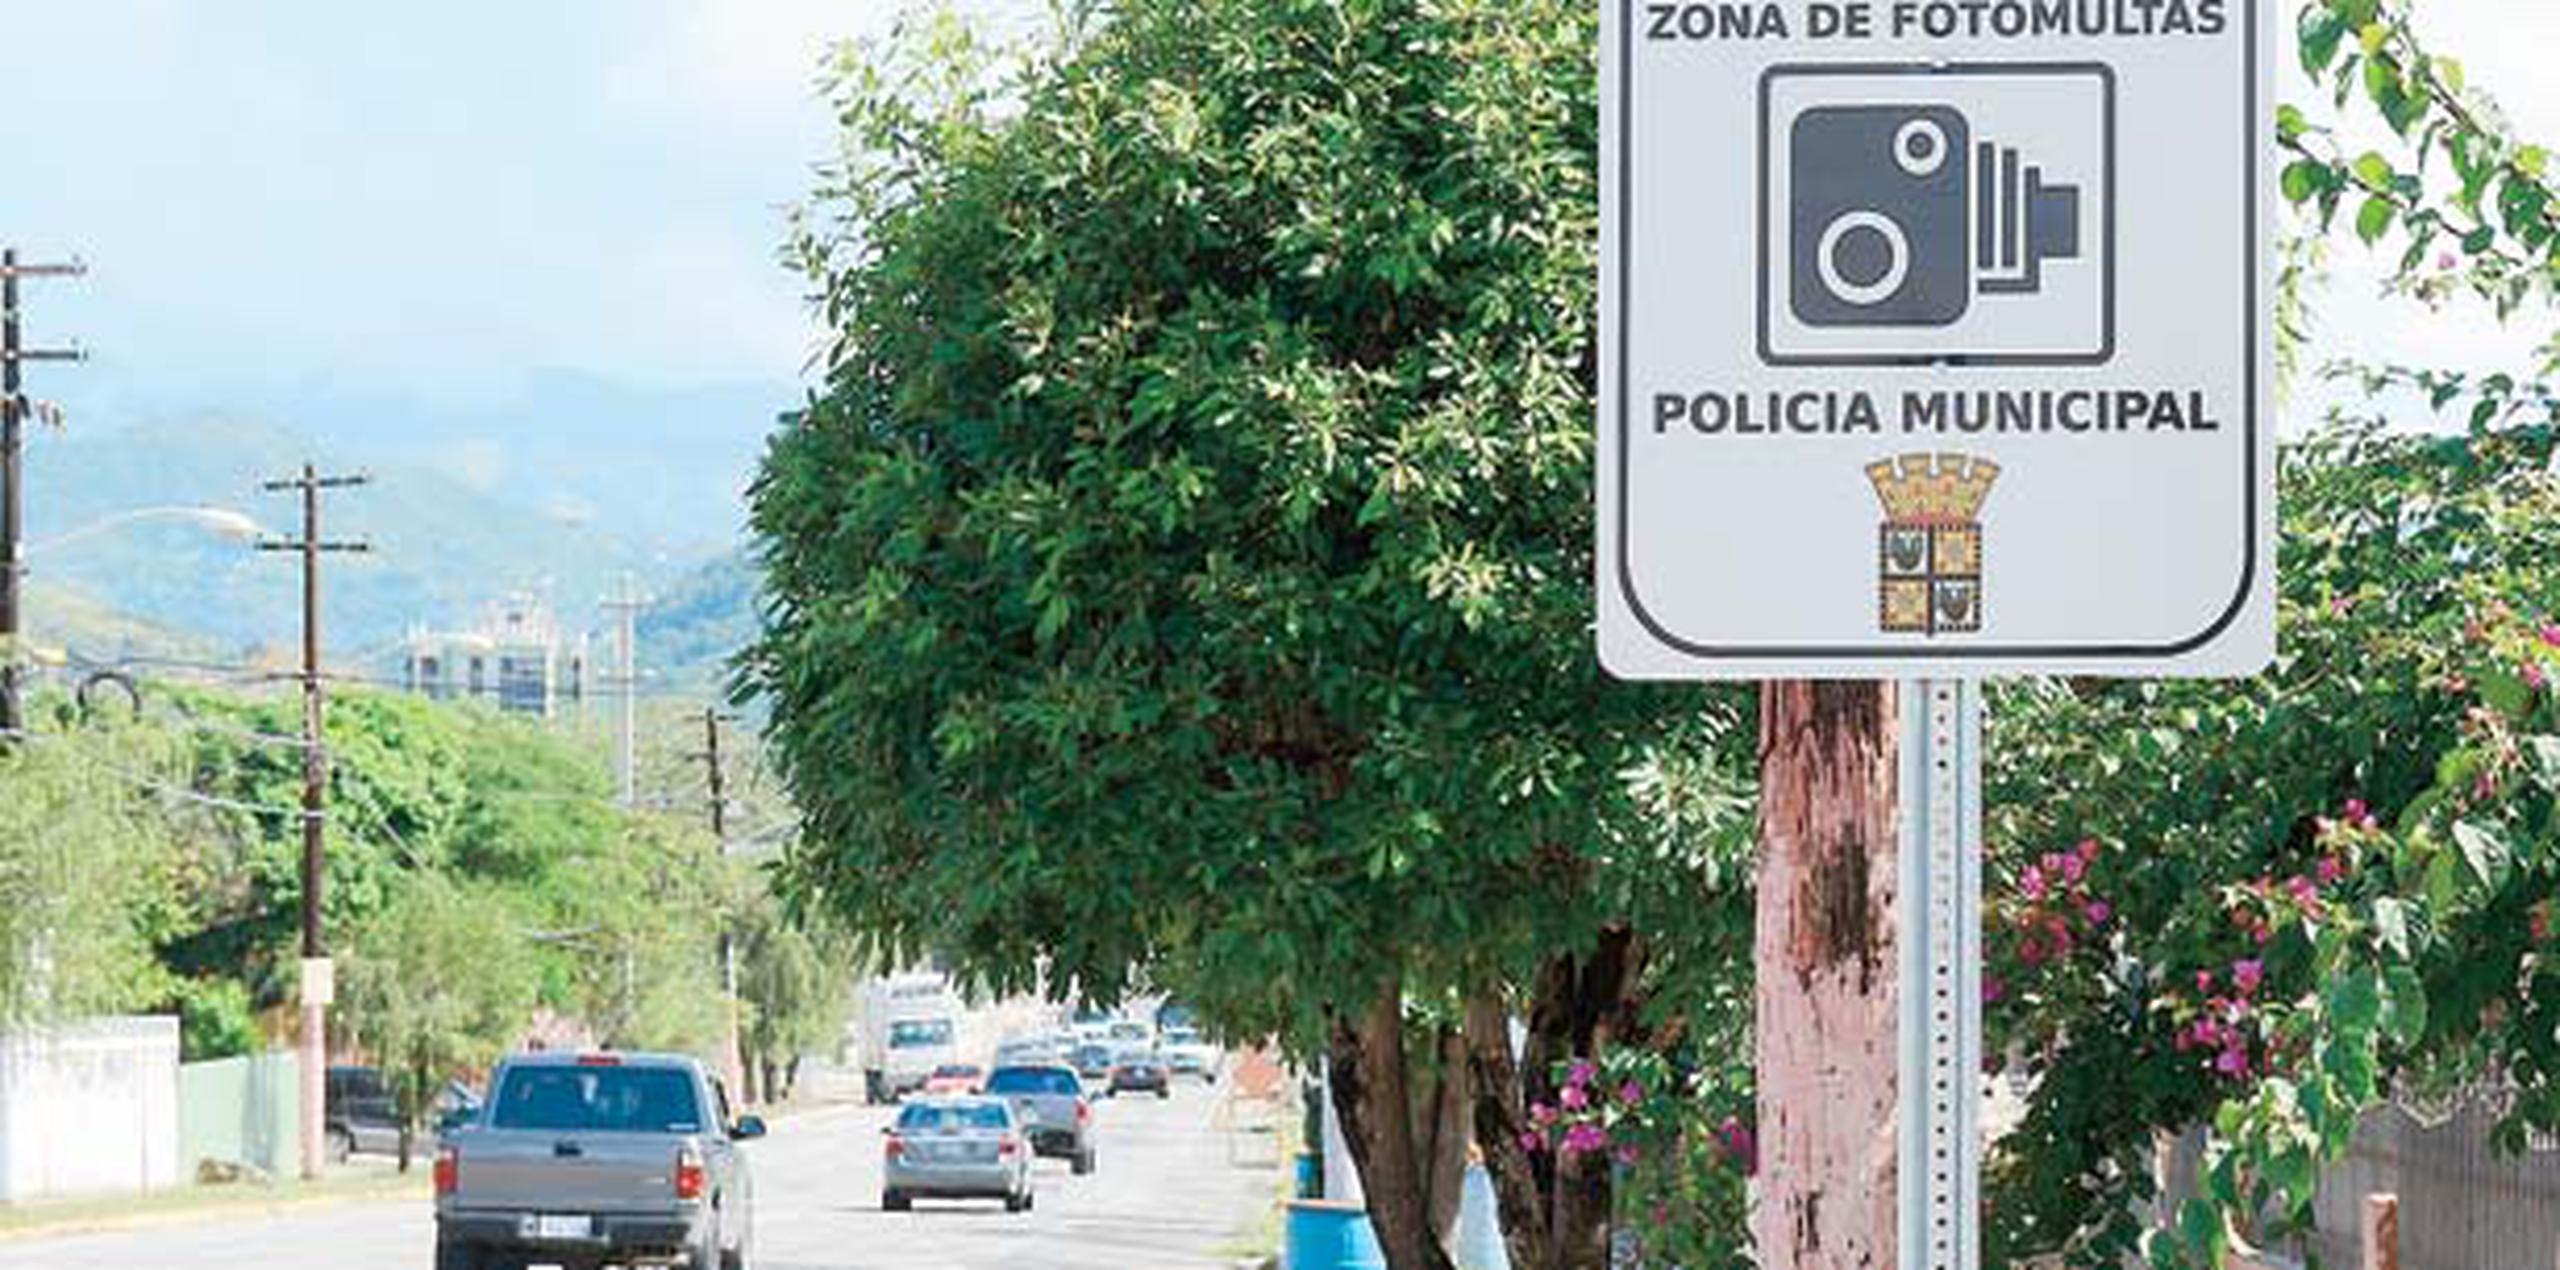 El alcalde de Yauco aseguró que, en el poco más de un año que estuvo vigente, el sistema automatizado redujo las multas expedidas de 18,000 a 2,000. (Archivo)